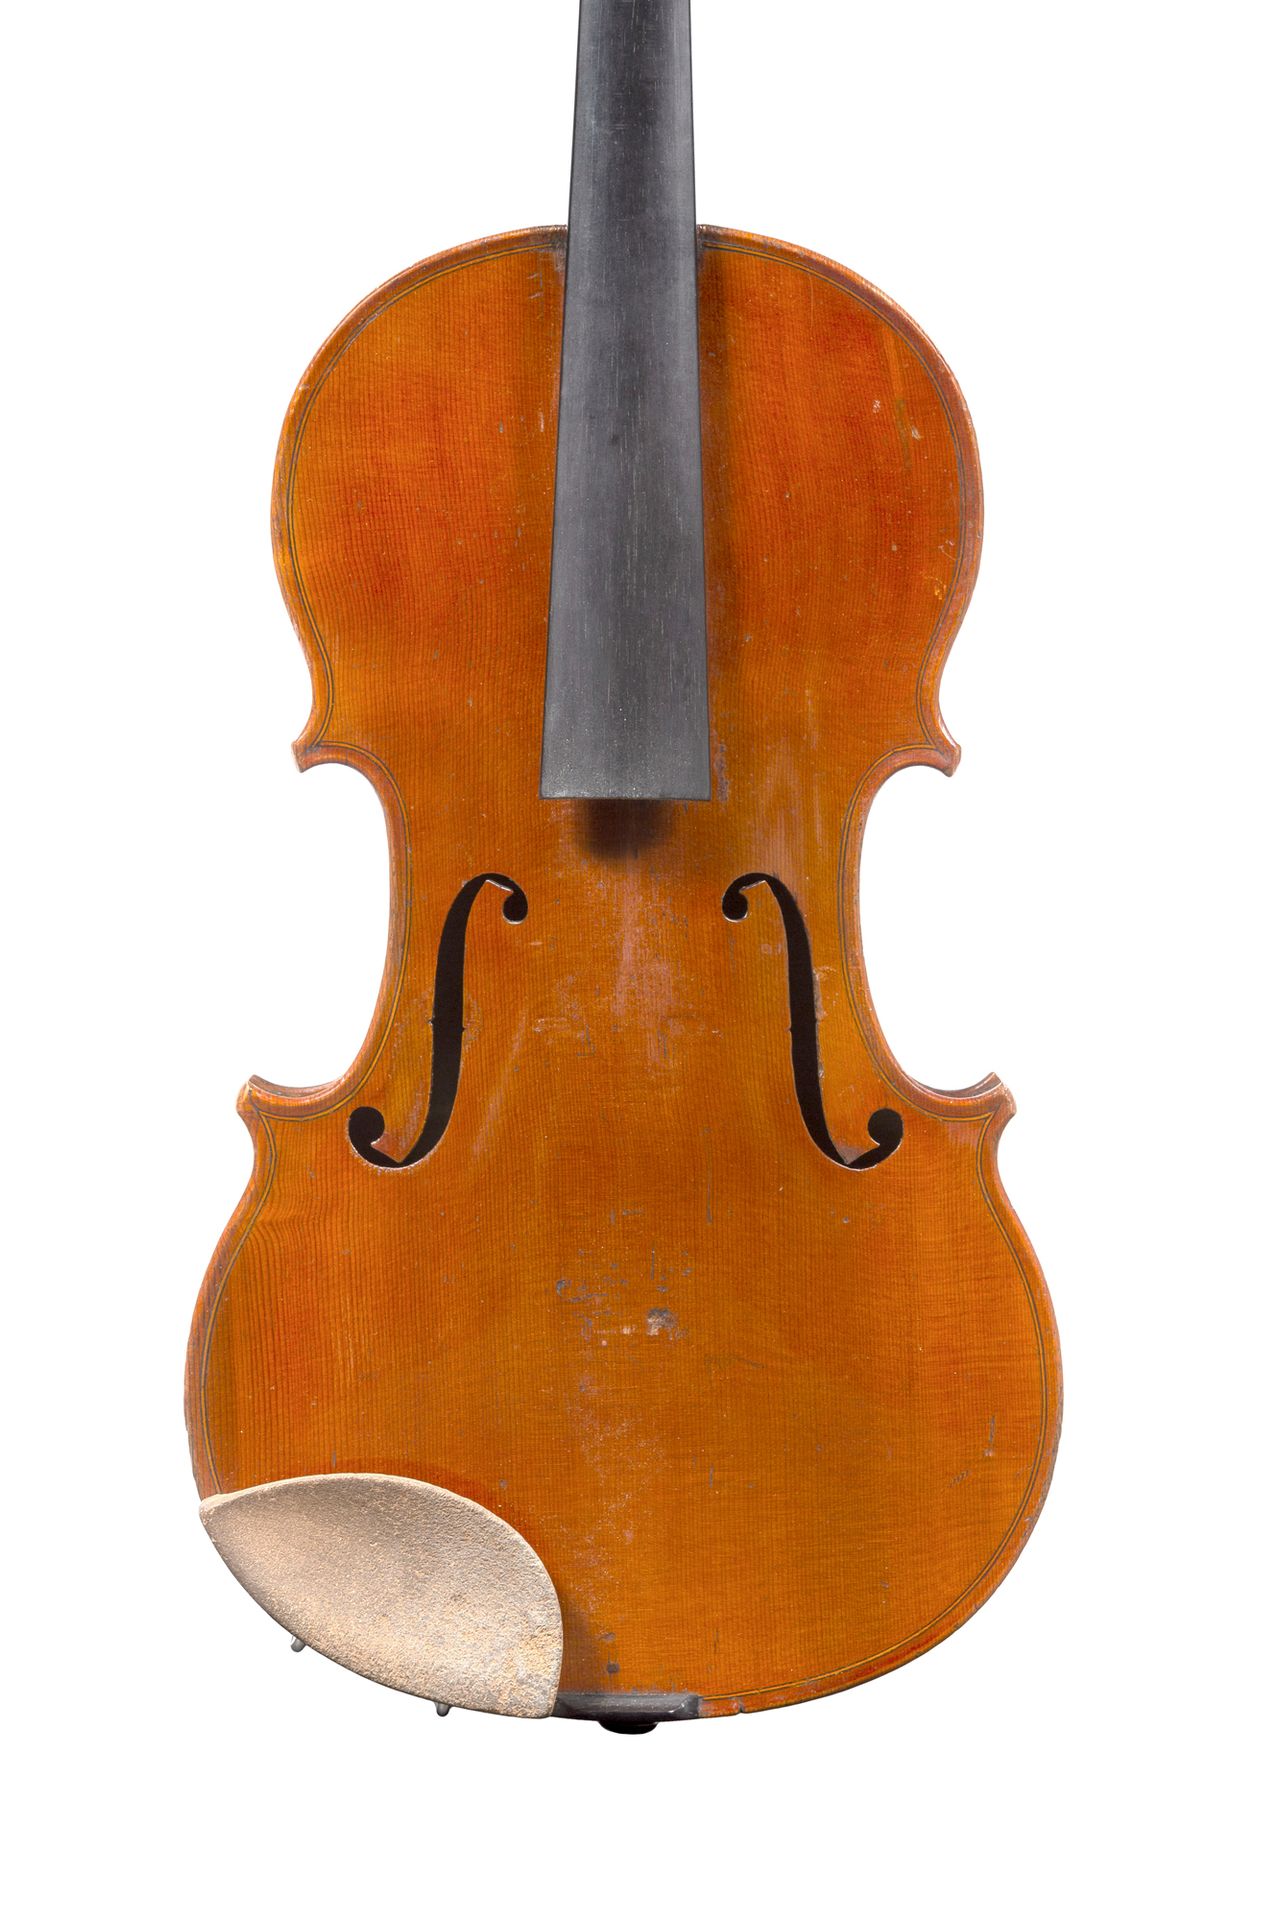 Null Interesante violín de Joseph Philippe Mougel
Fabricado en Mirecourt hacia 1&hellip;